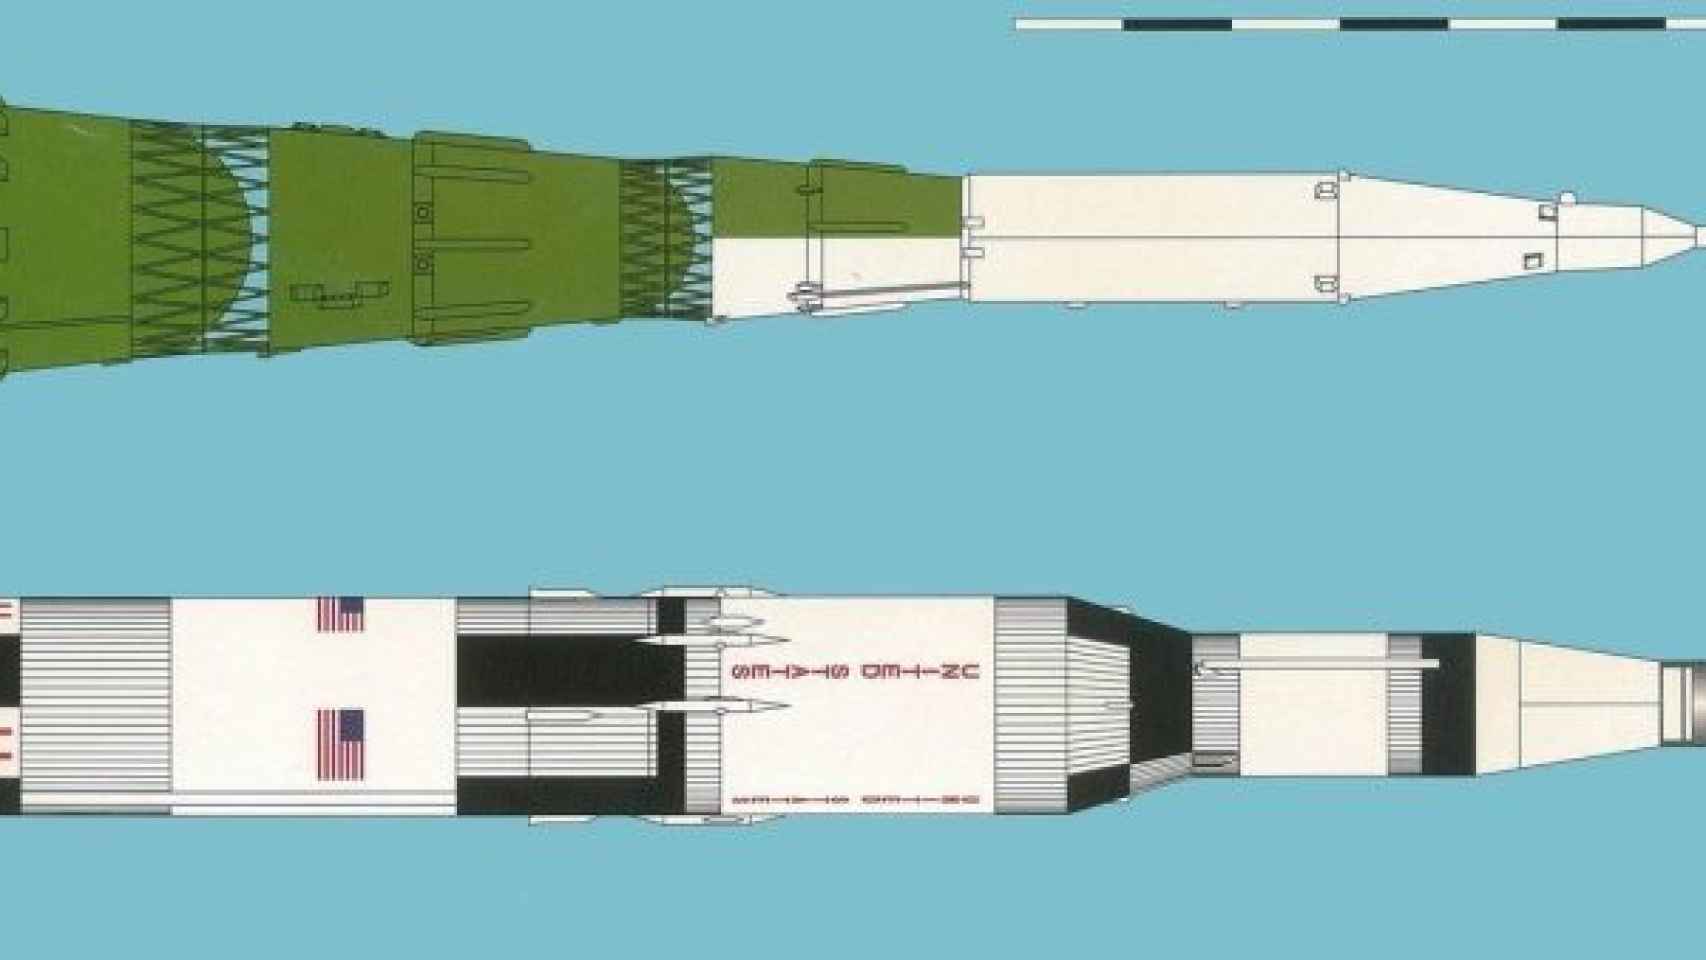 Comparación entre el Saturno V y el cohete soviético N1.